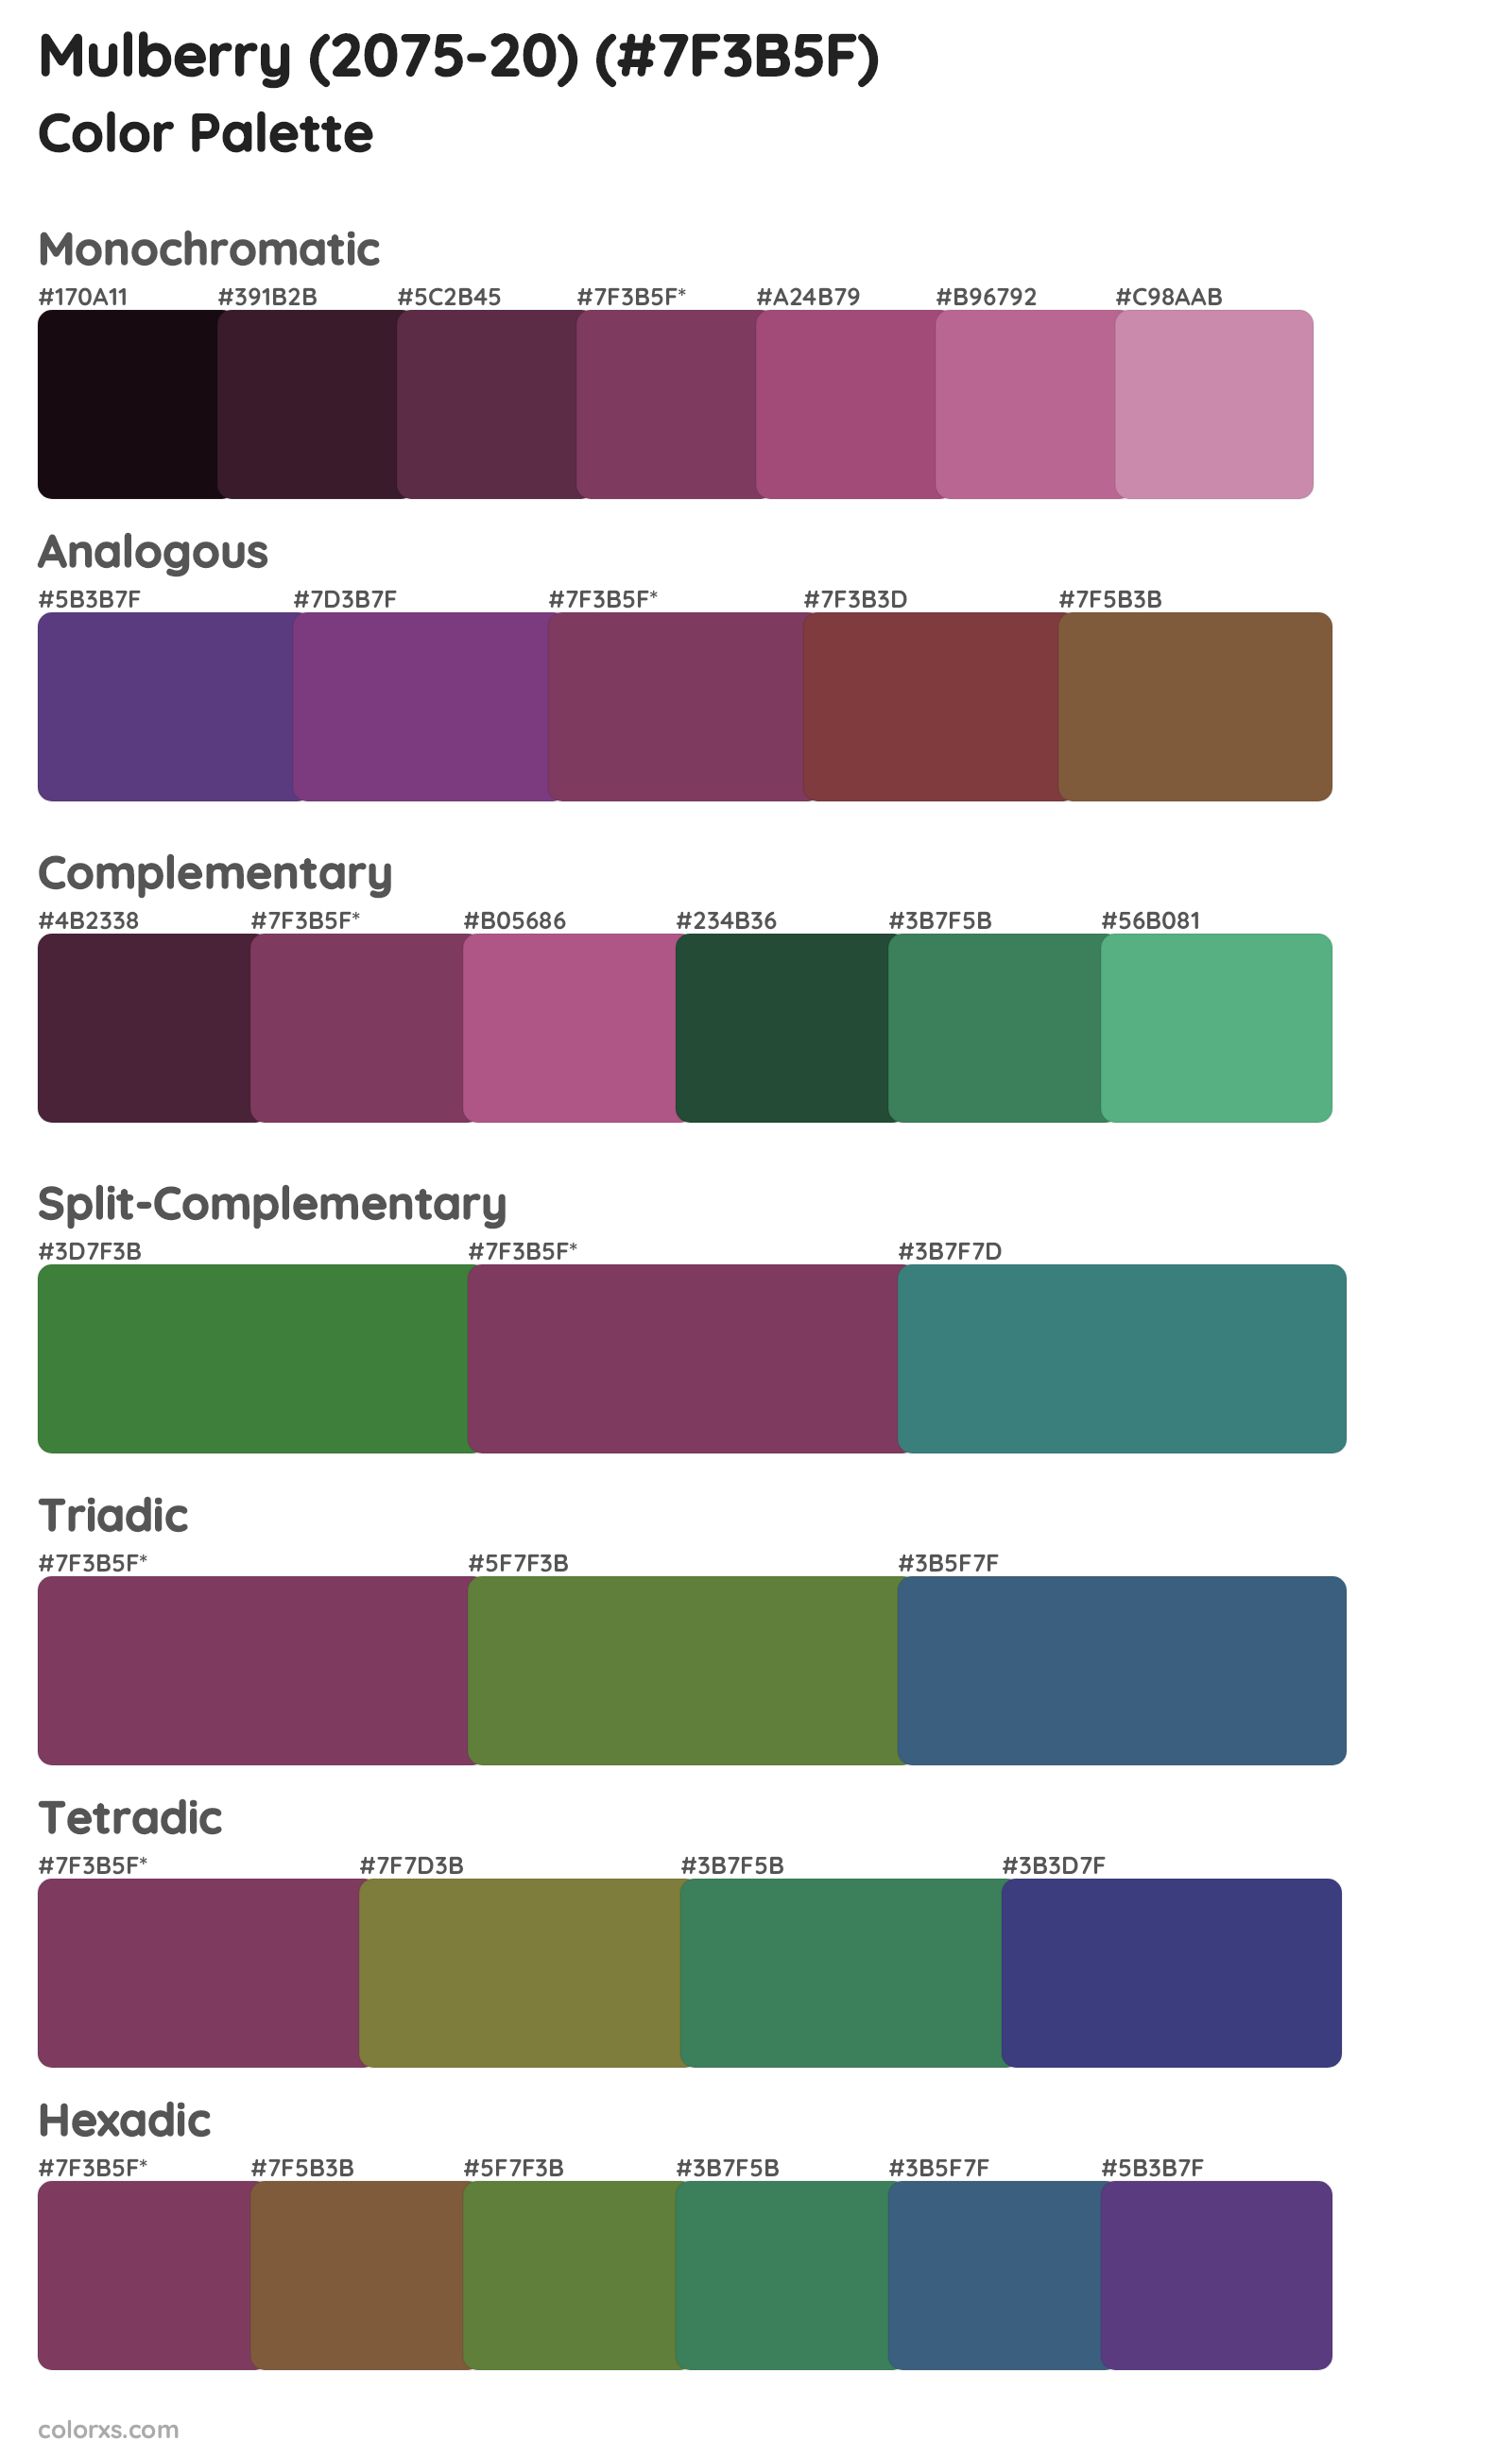 Mulberry (2075-20) Color Scheme Palettes